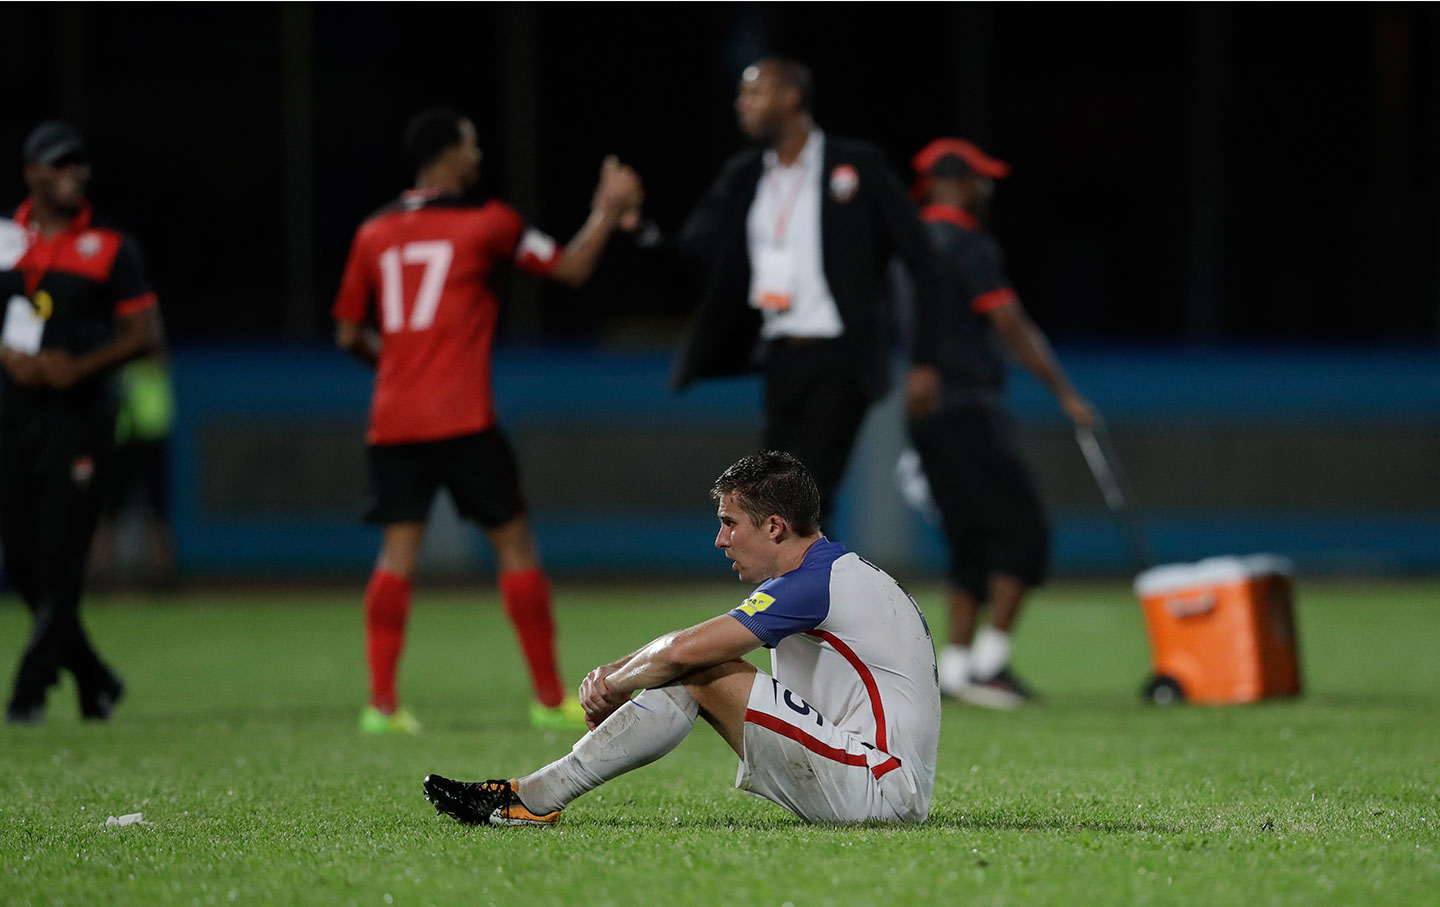 USA-Trinidad and Tobago World Cup 2018